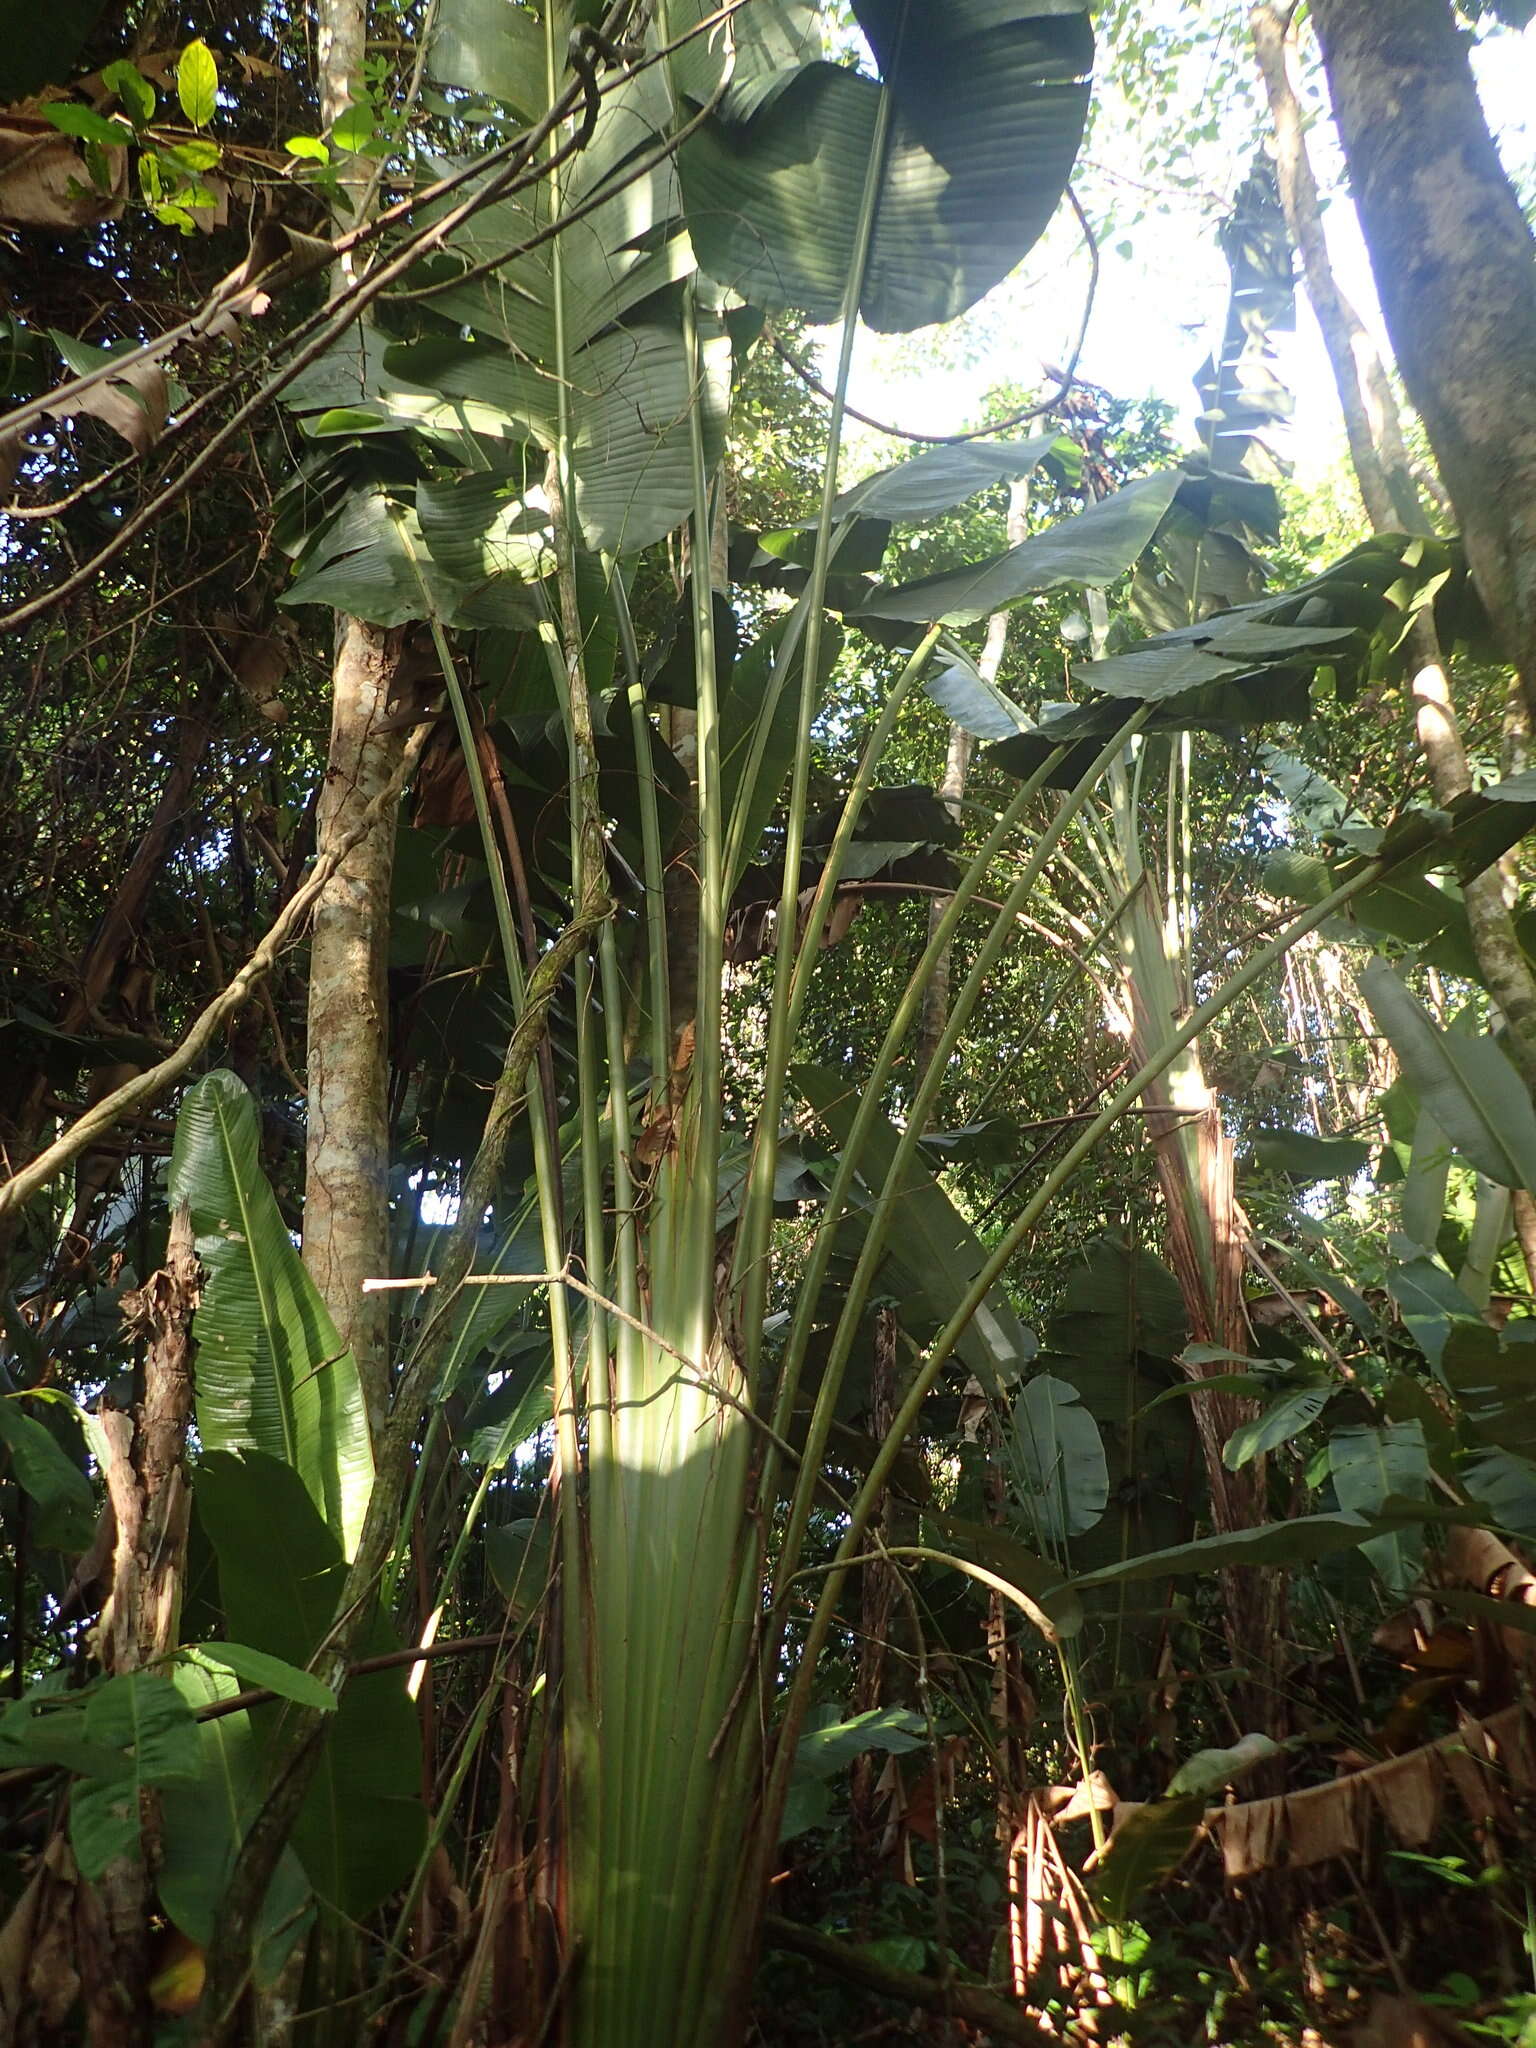 Image of Phenakospermum guyannense (A. Rich.) Endl. ex Miq.